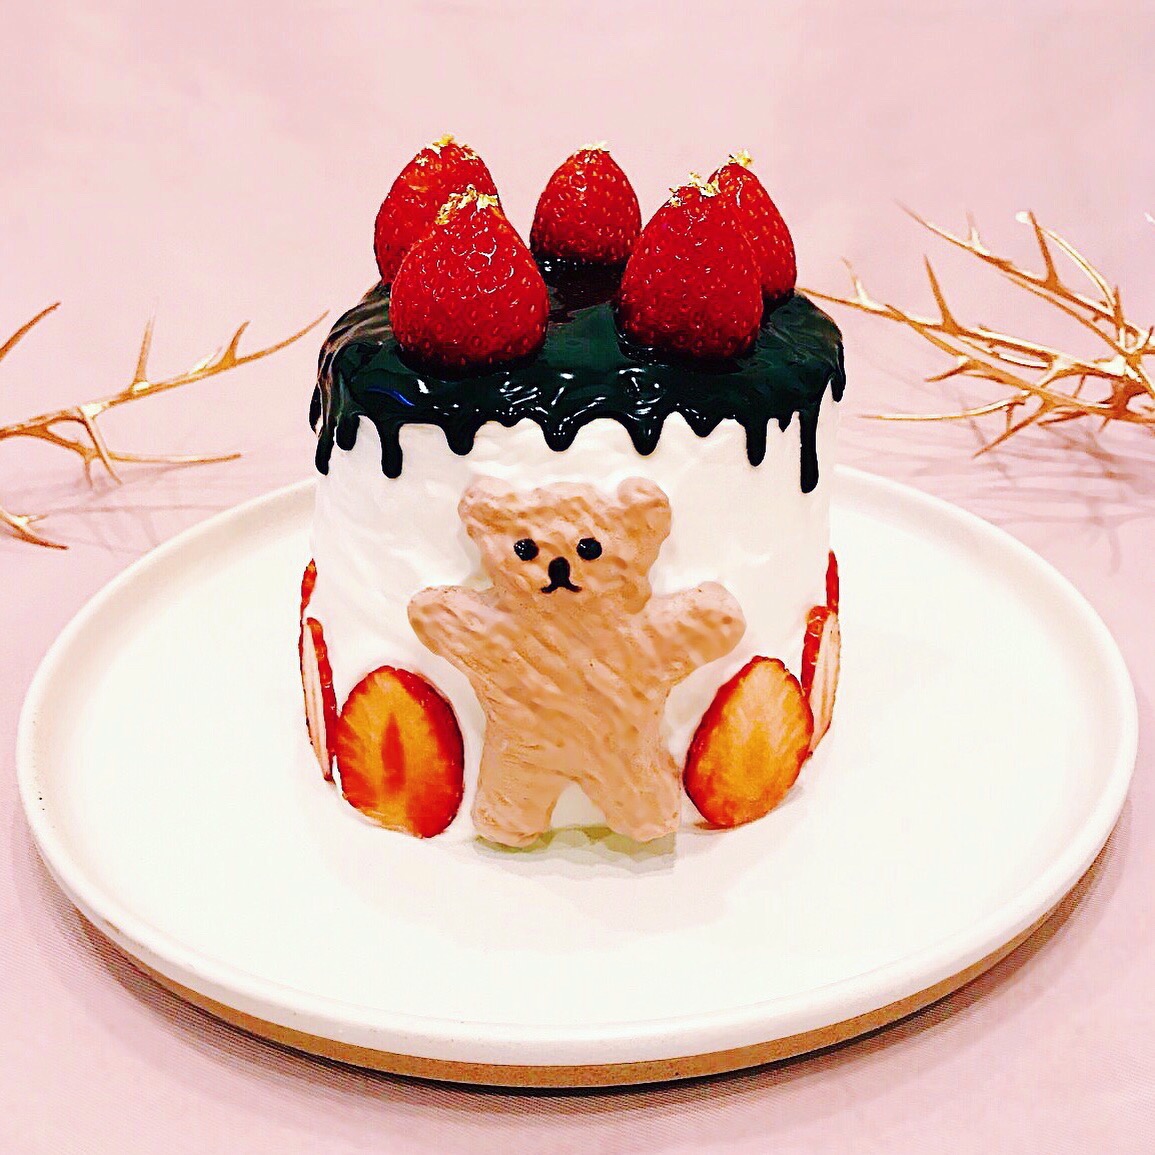 これまでで最高の可愛い 簡単 ケーキ レシピ 最高の動物画像